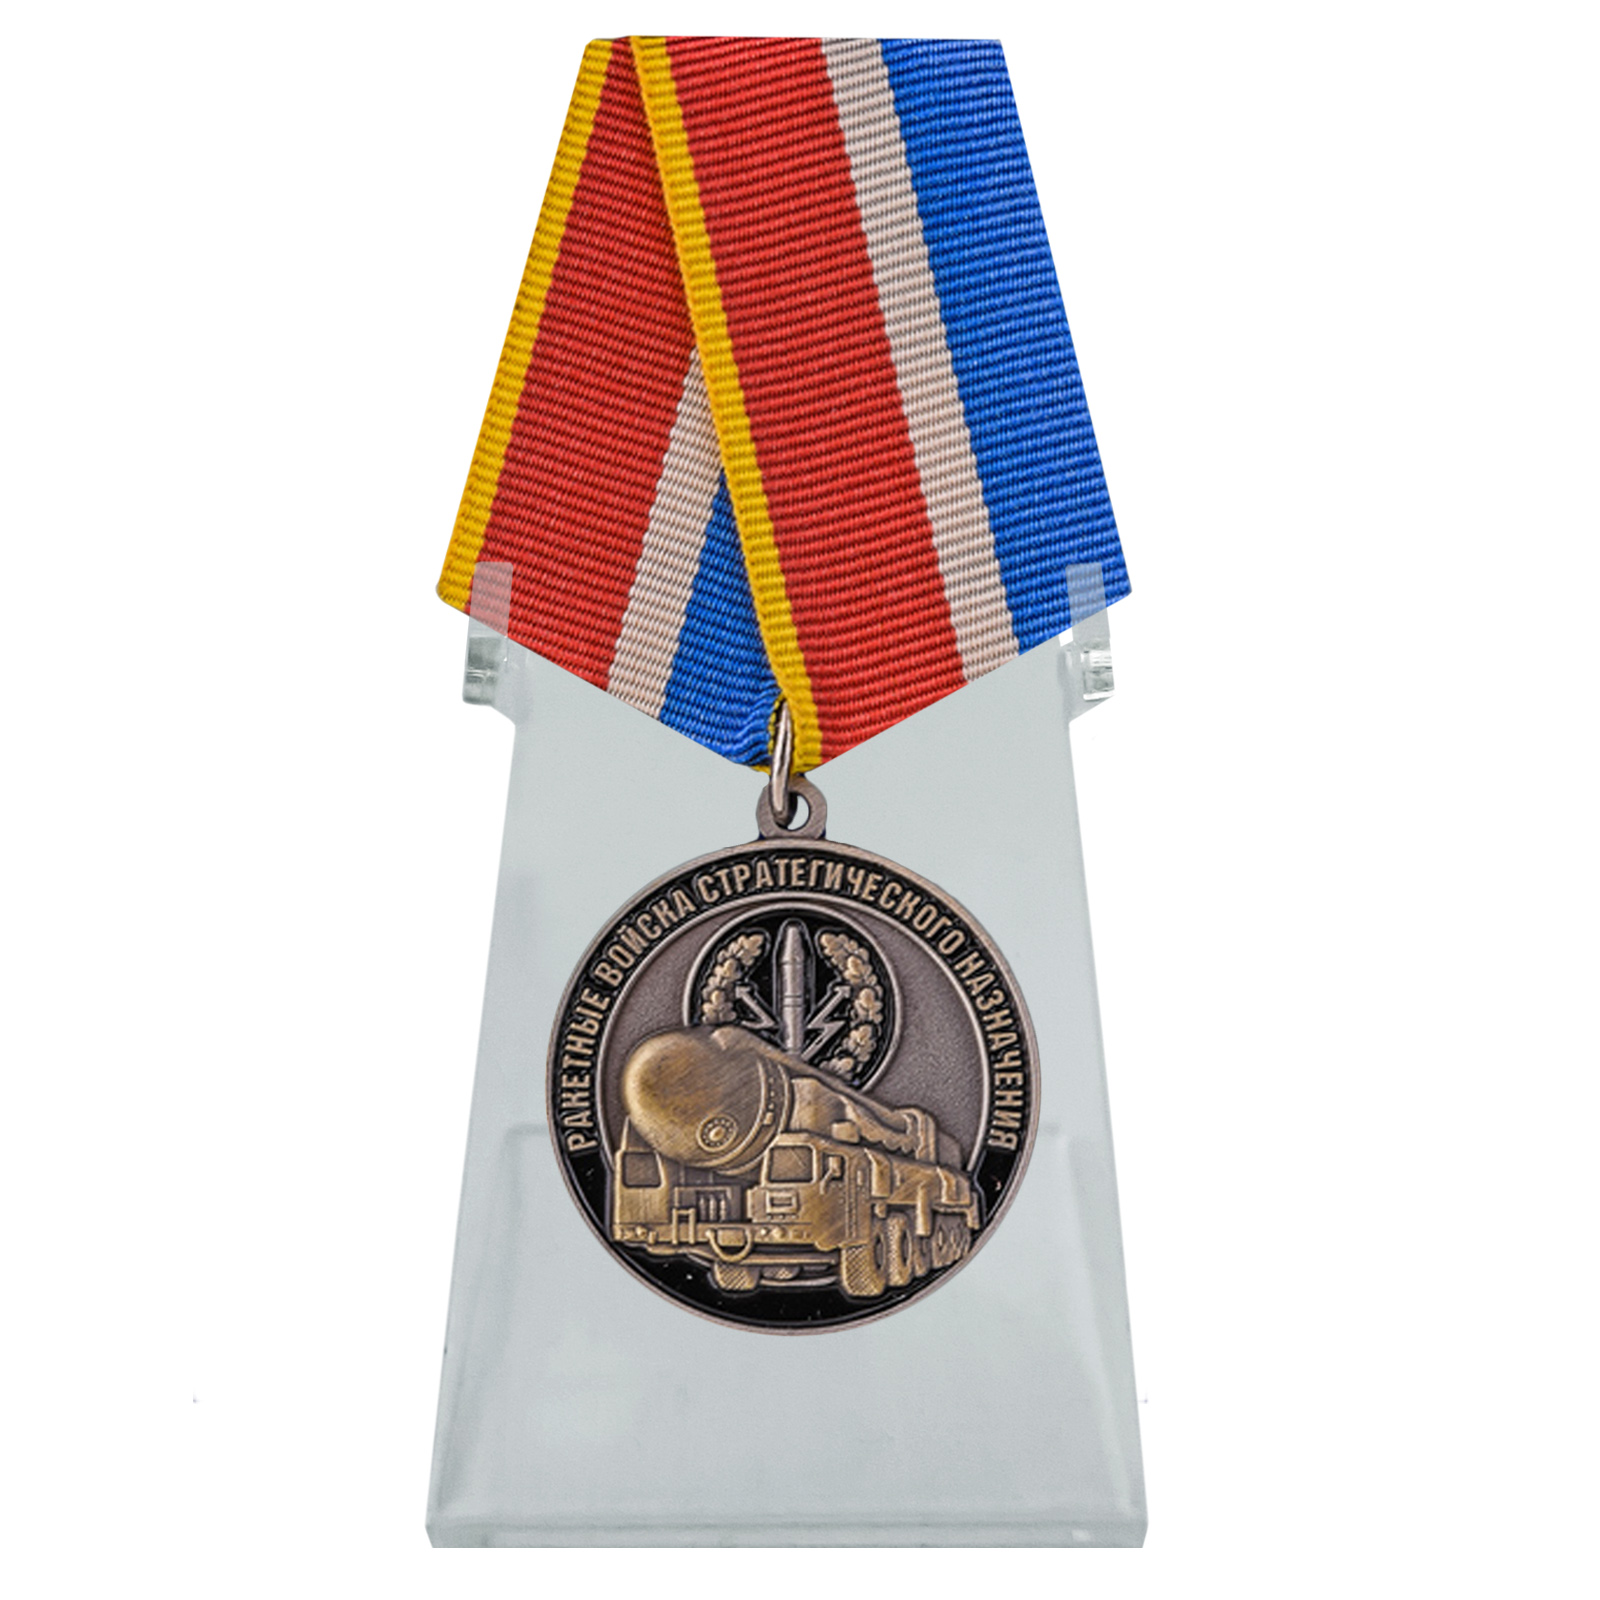 Медаль "Ракетные войска стратегического назначения" на подставке